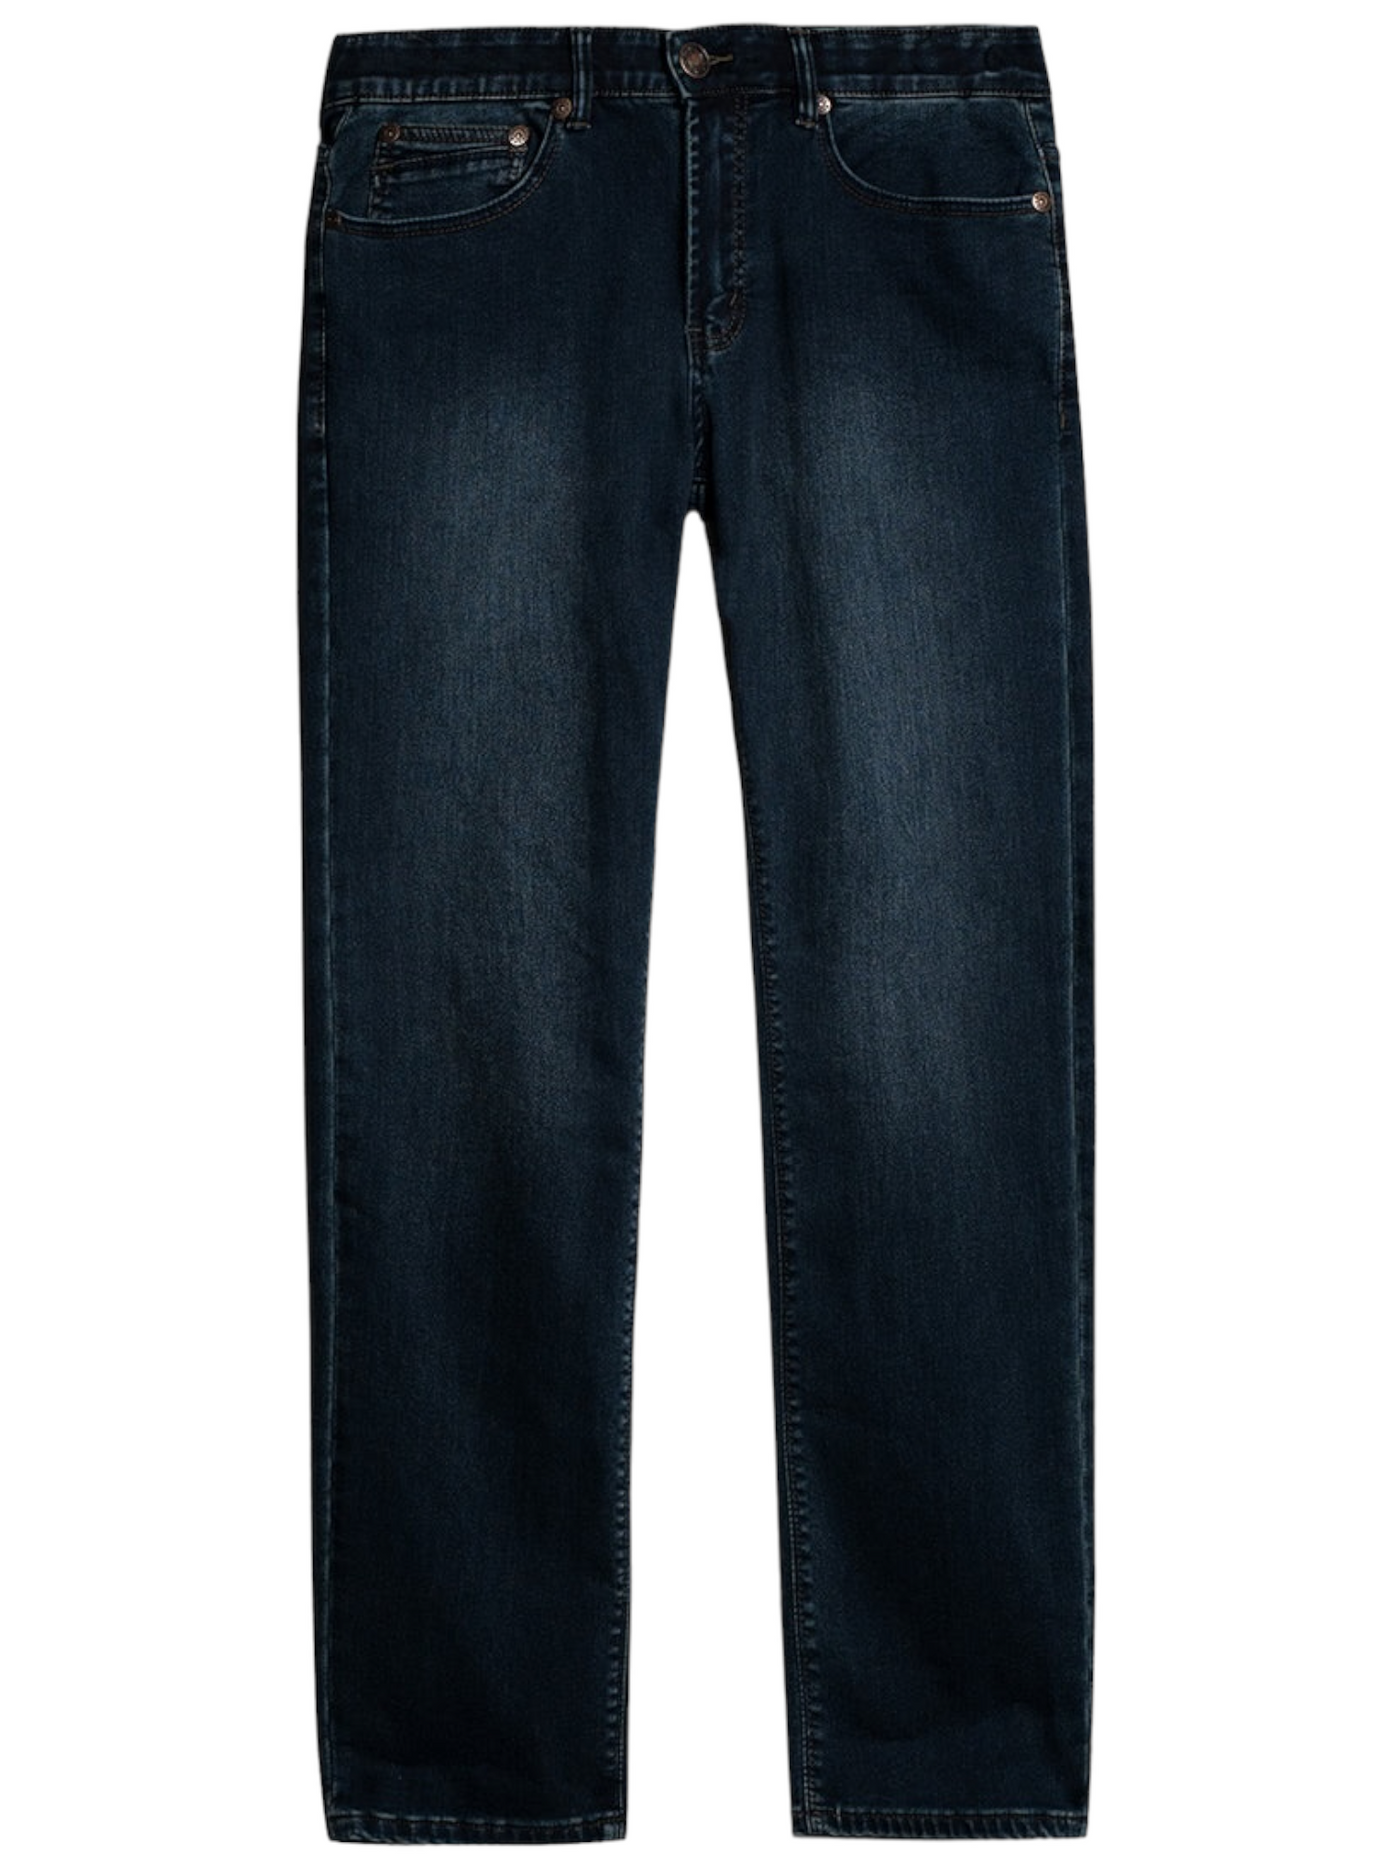 Jeans bleu foncé doublé effet délavé coupe étroite